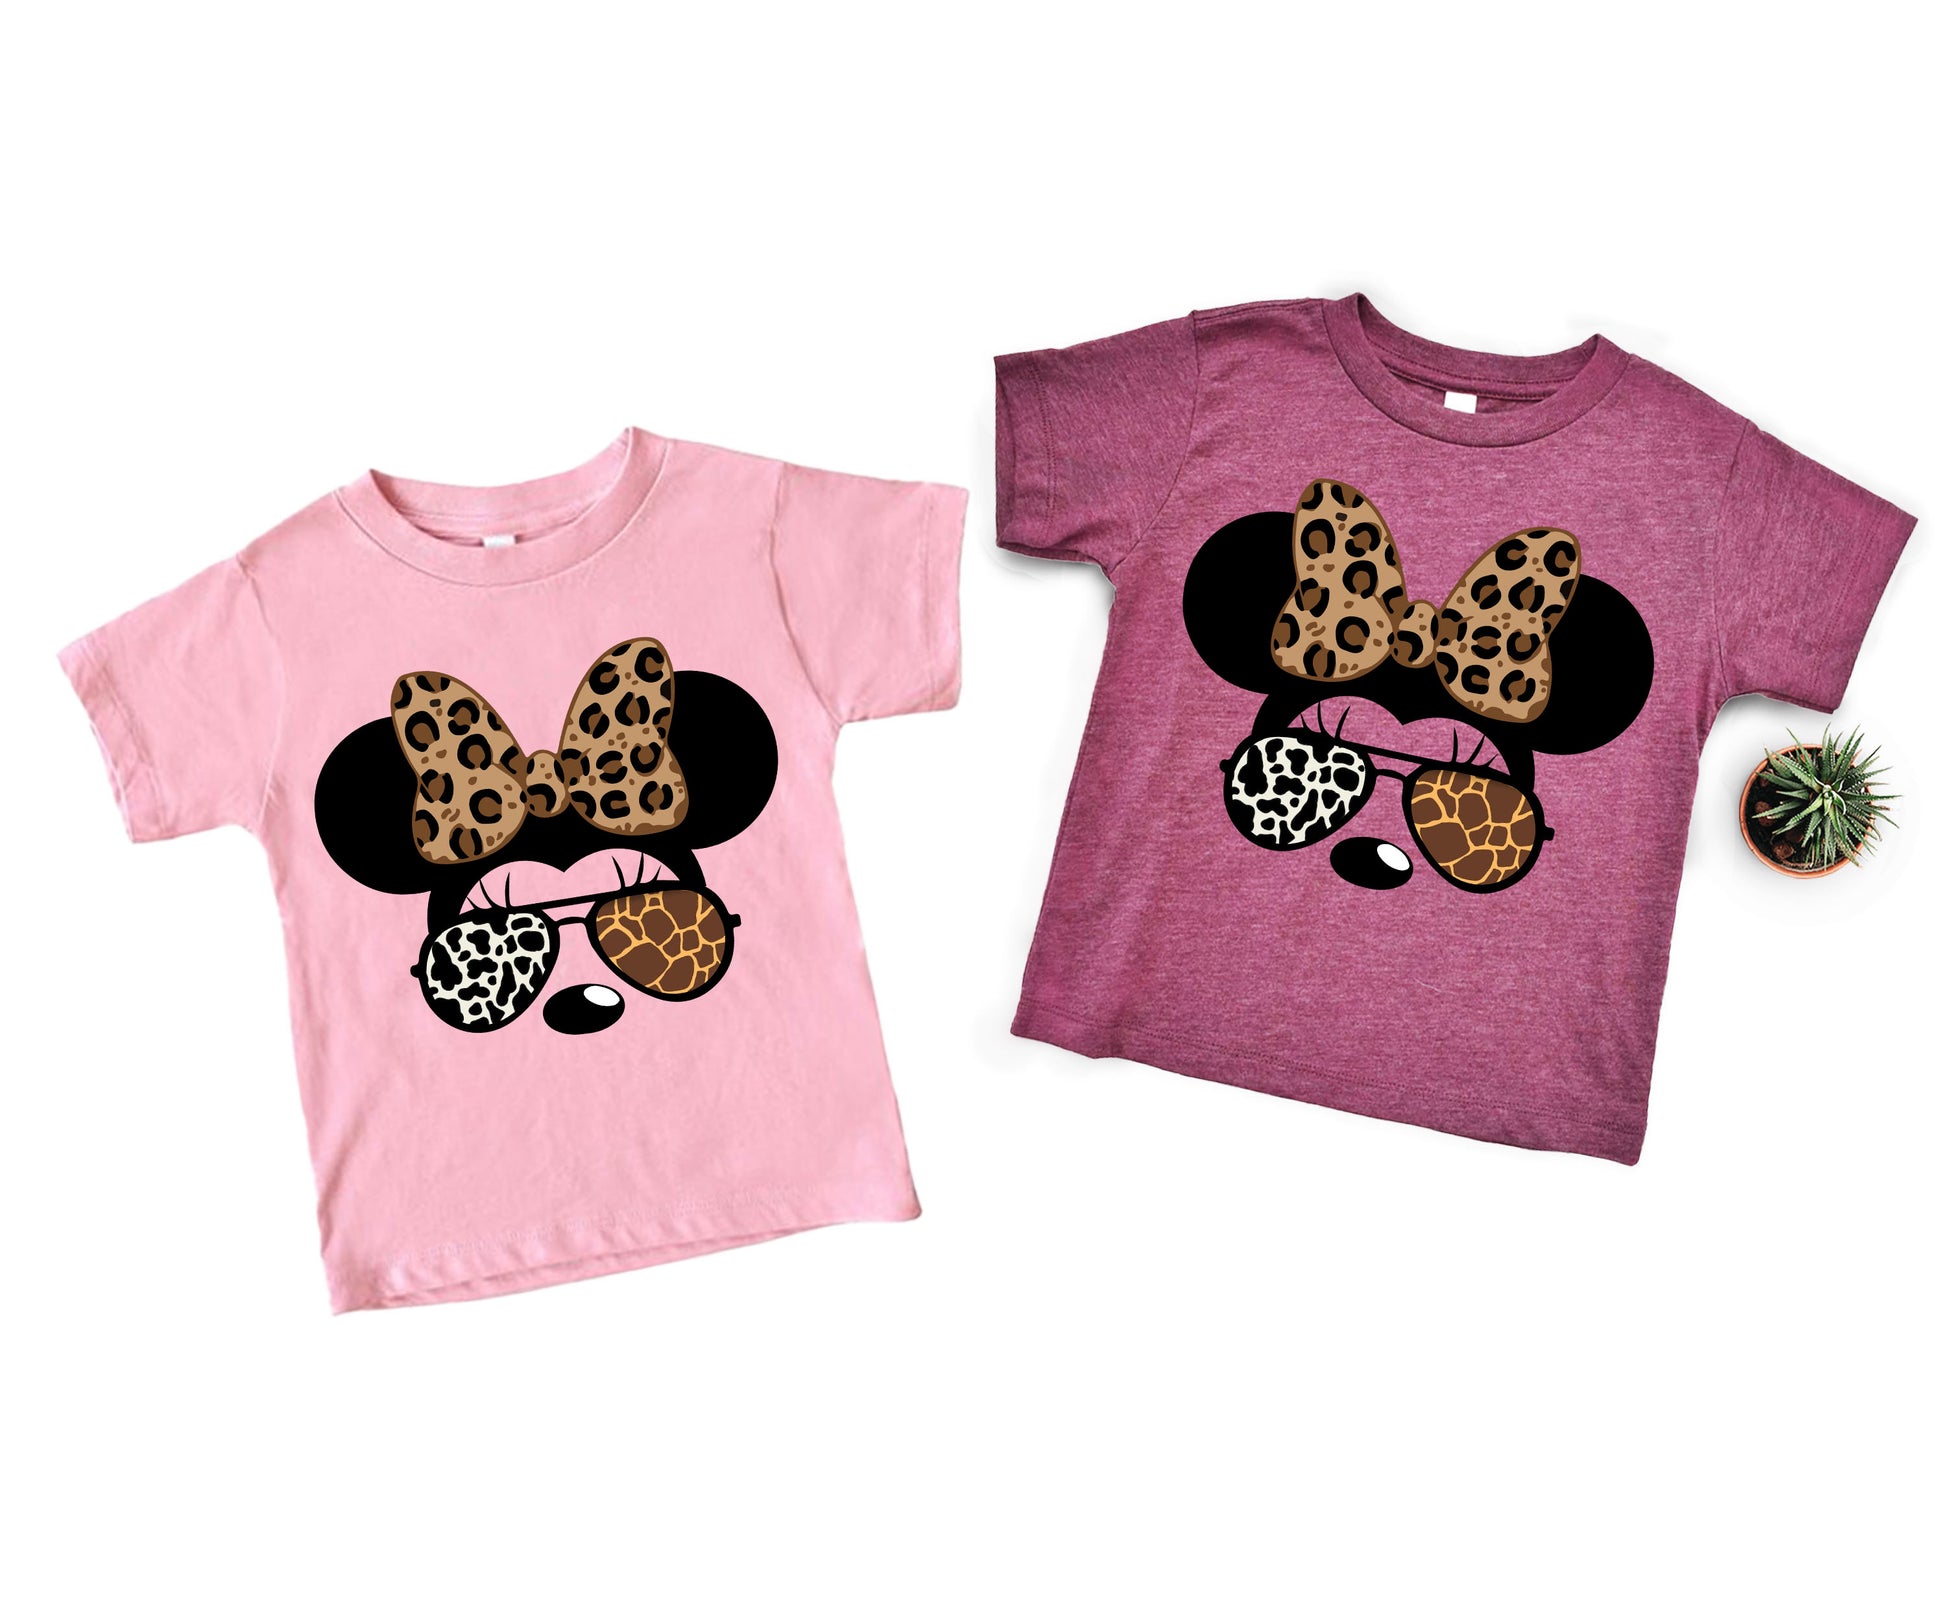 Disney Safari Shirts, Disney Animal Kingdom Family Shirts, Disney Family Matching Shirts-newamarketing